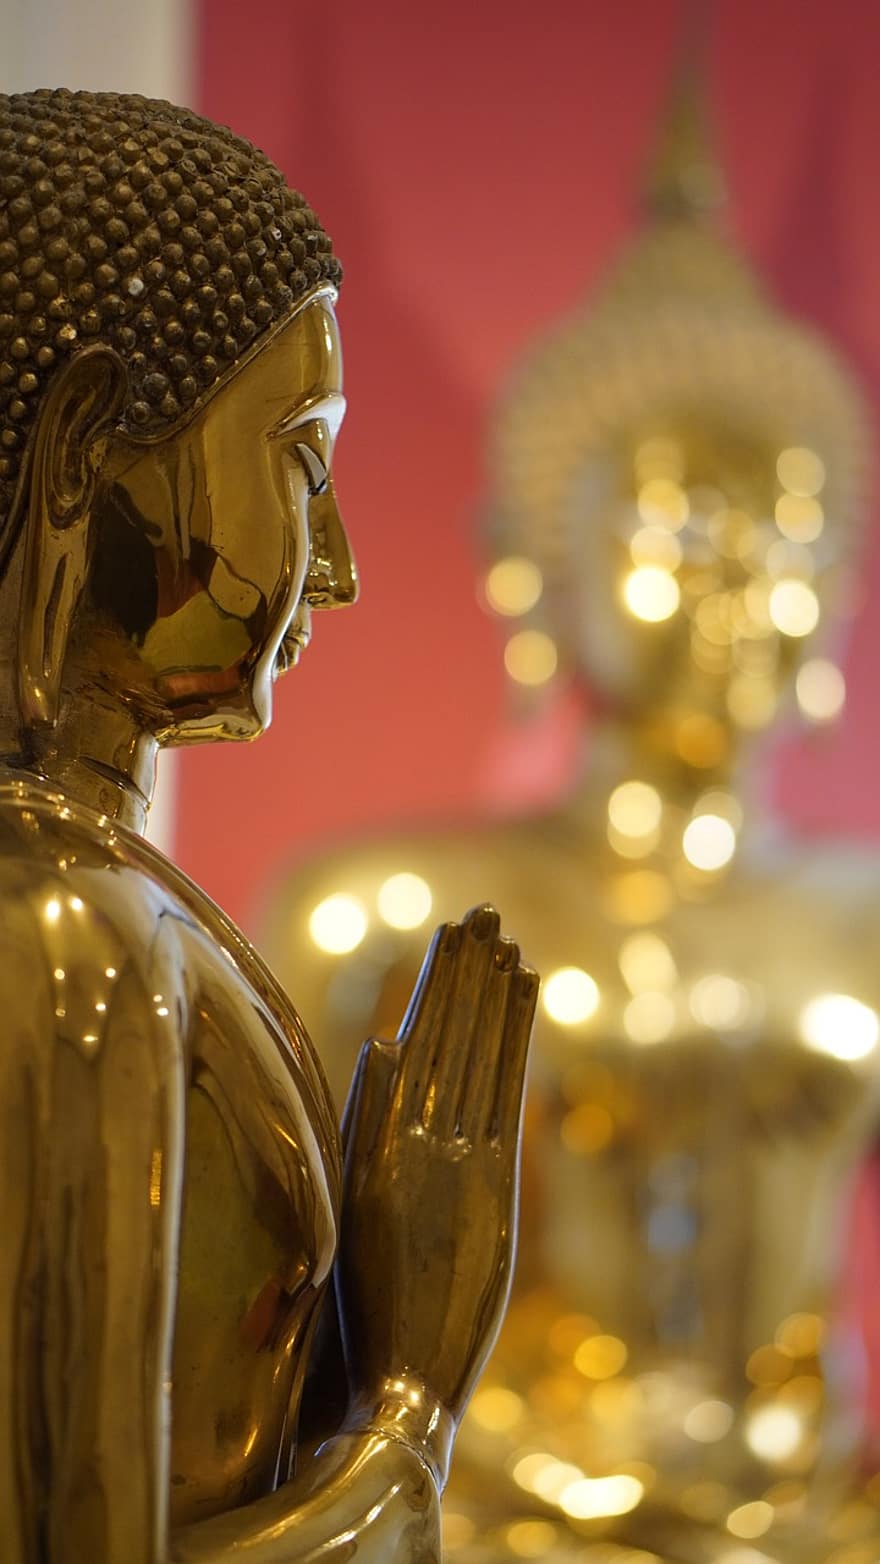 templu, buddha, statuie, budism, budist, sculptură, sfânt, religie, spiritualitate, Tailanda